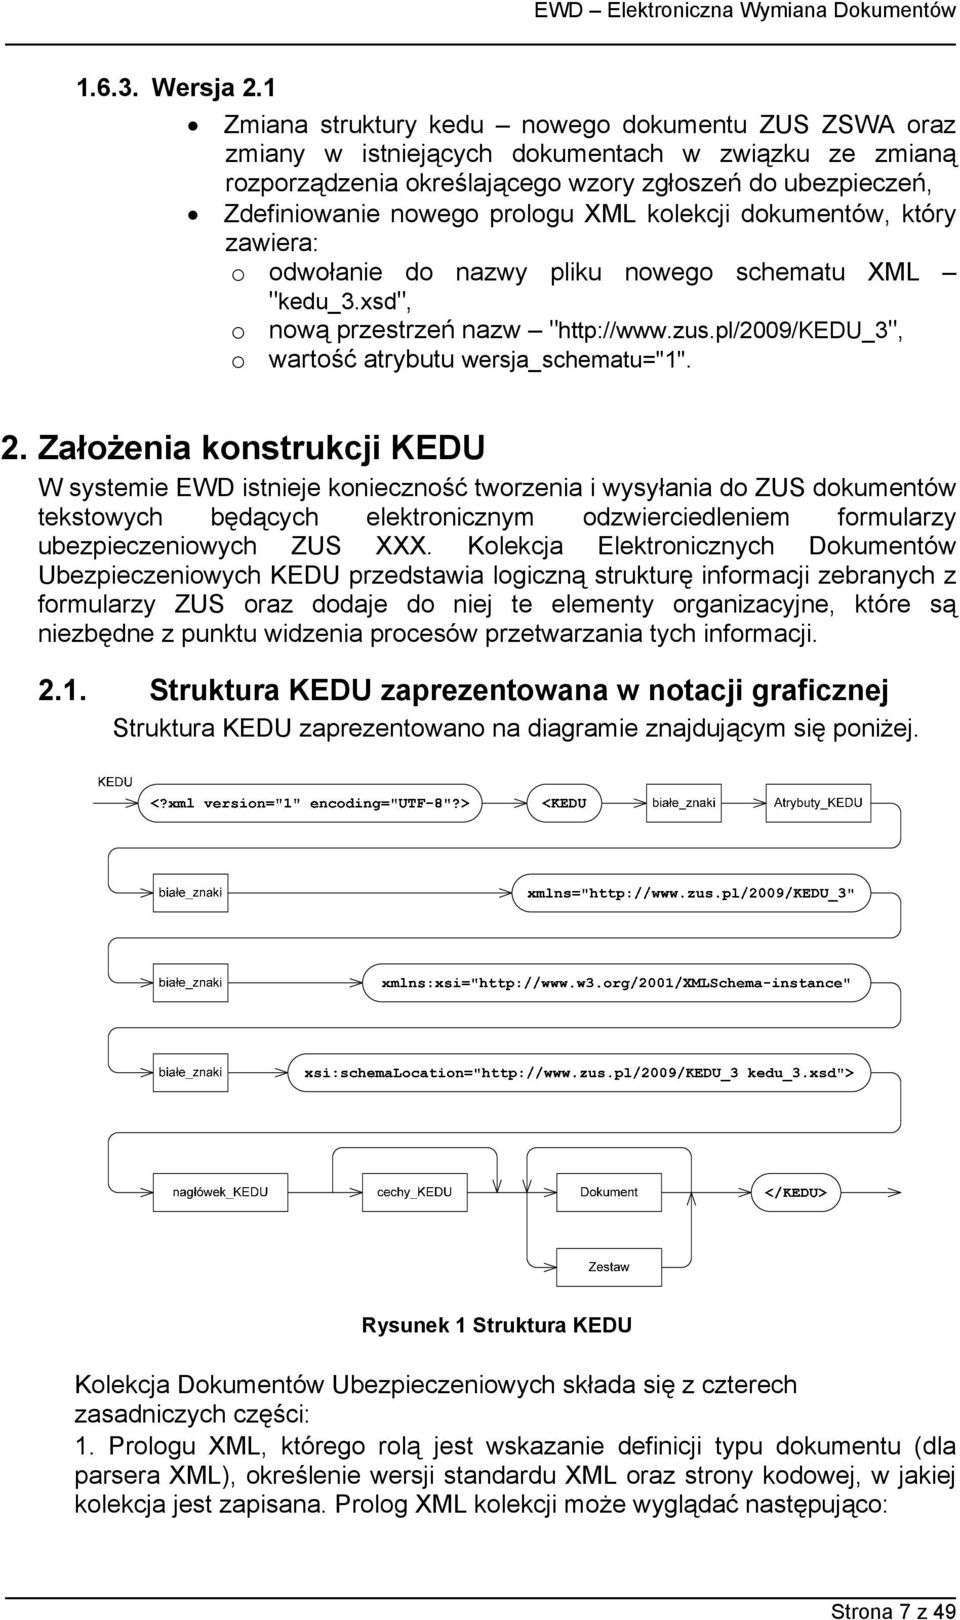 kolekcji dokumentów, który zawiera: o odwołanie do nazwy pliku nowego schematu XML "kedu_3.xsd", o nową przestrzeń nazw "http://www.zus.pl/2009/kedu_3", o wartość atrybutu wersja_schematu="1". 2.